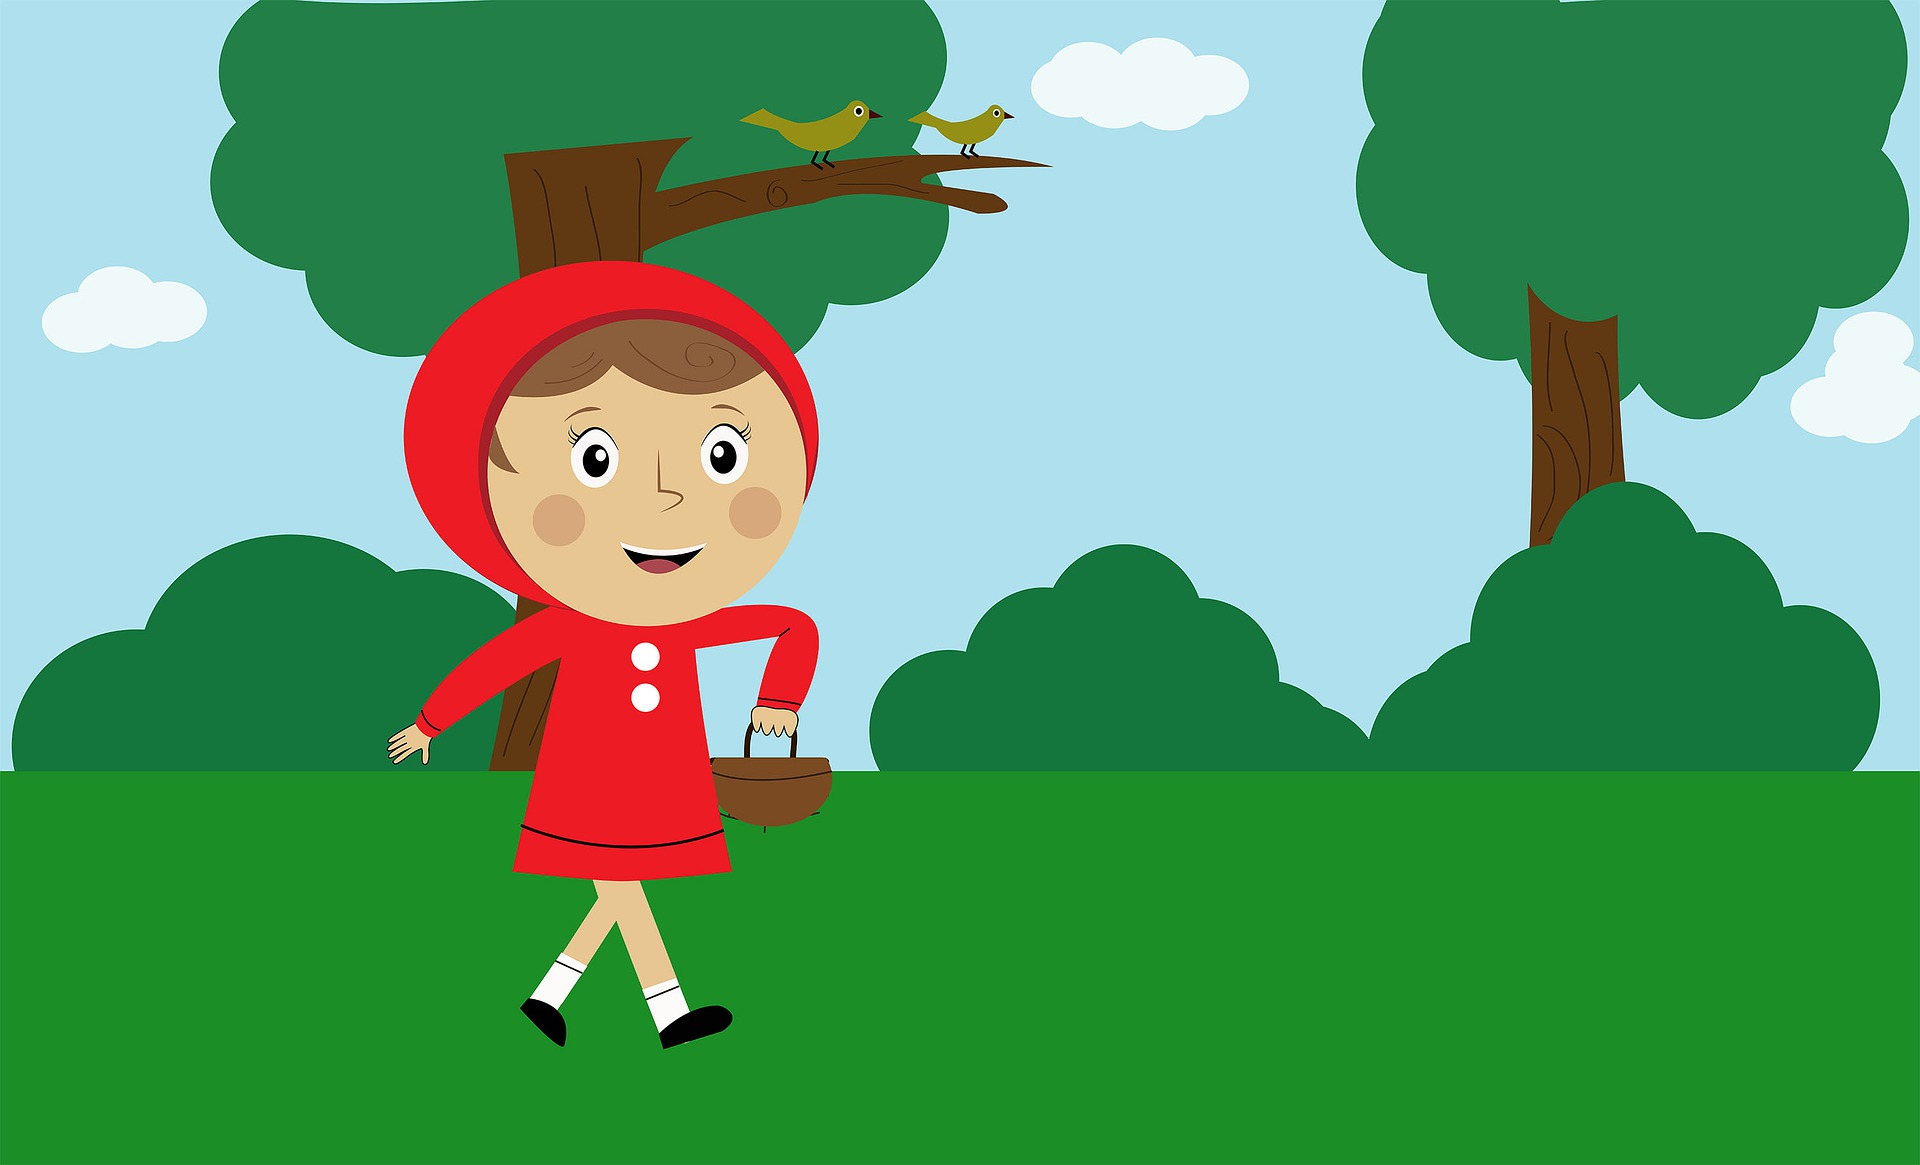 Imagen de caperucita roja con una cesta andando por el bosque.